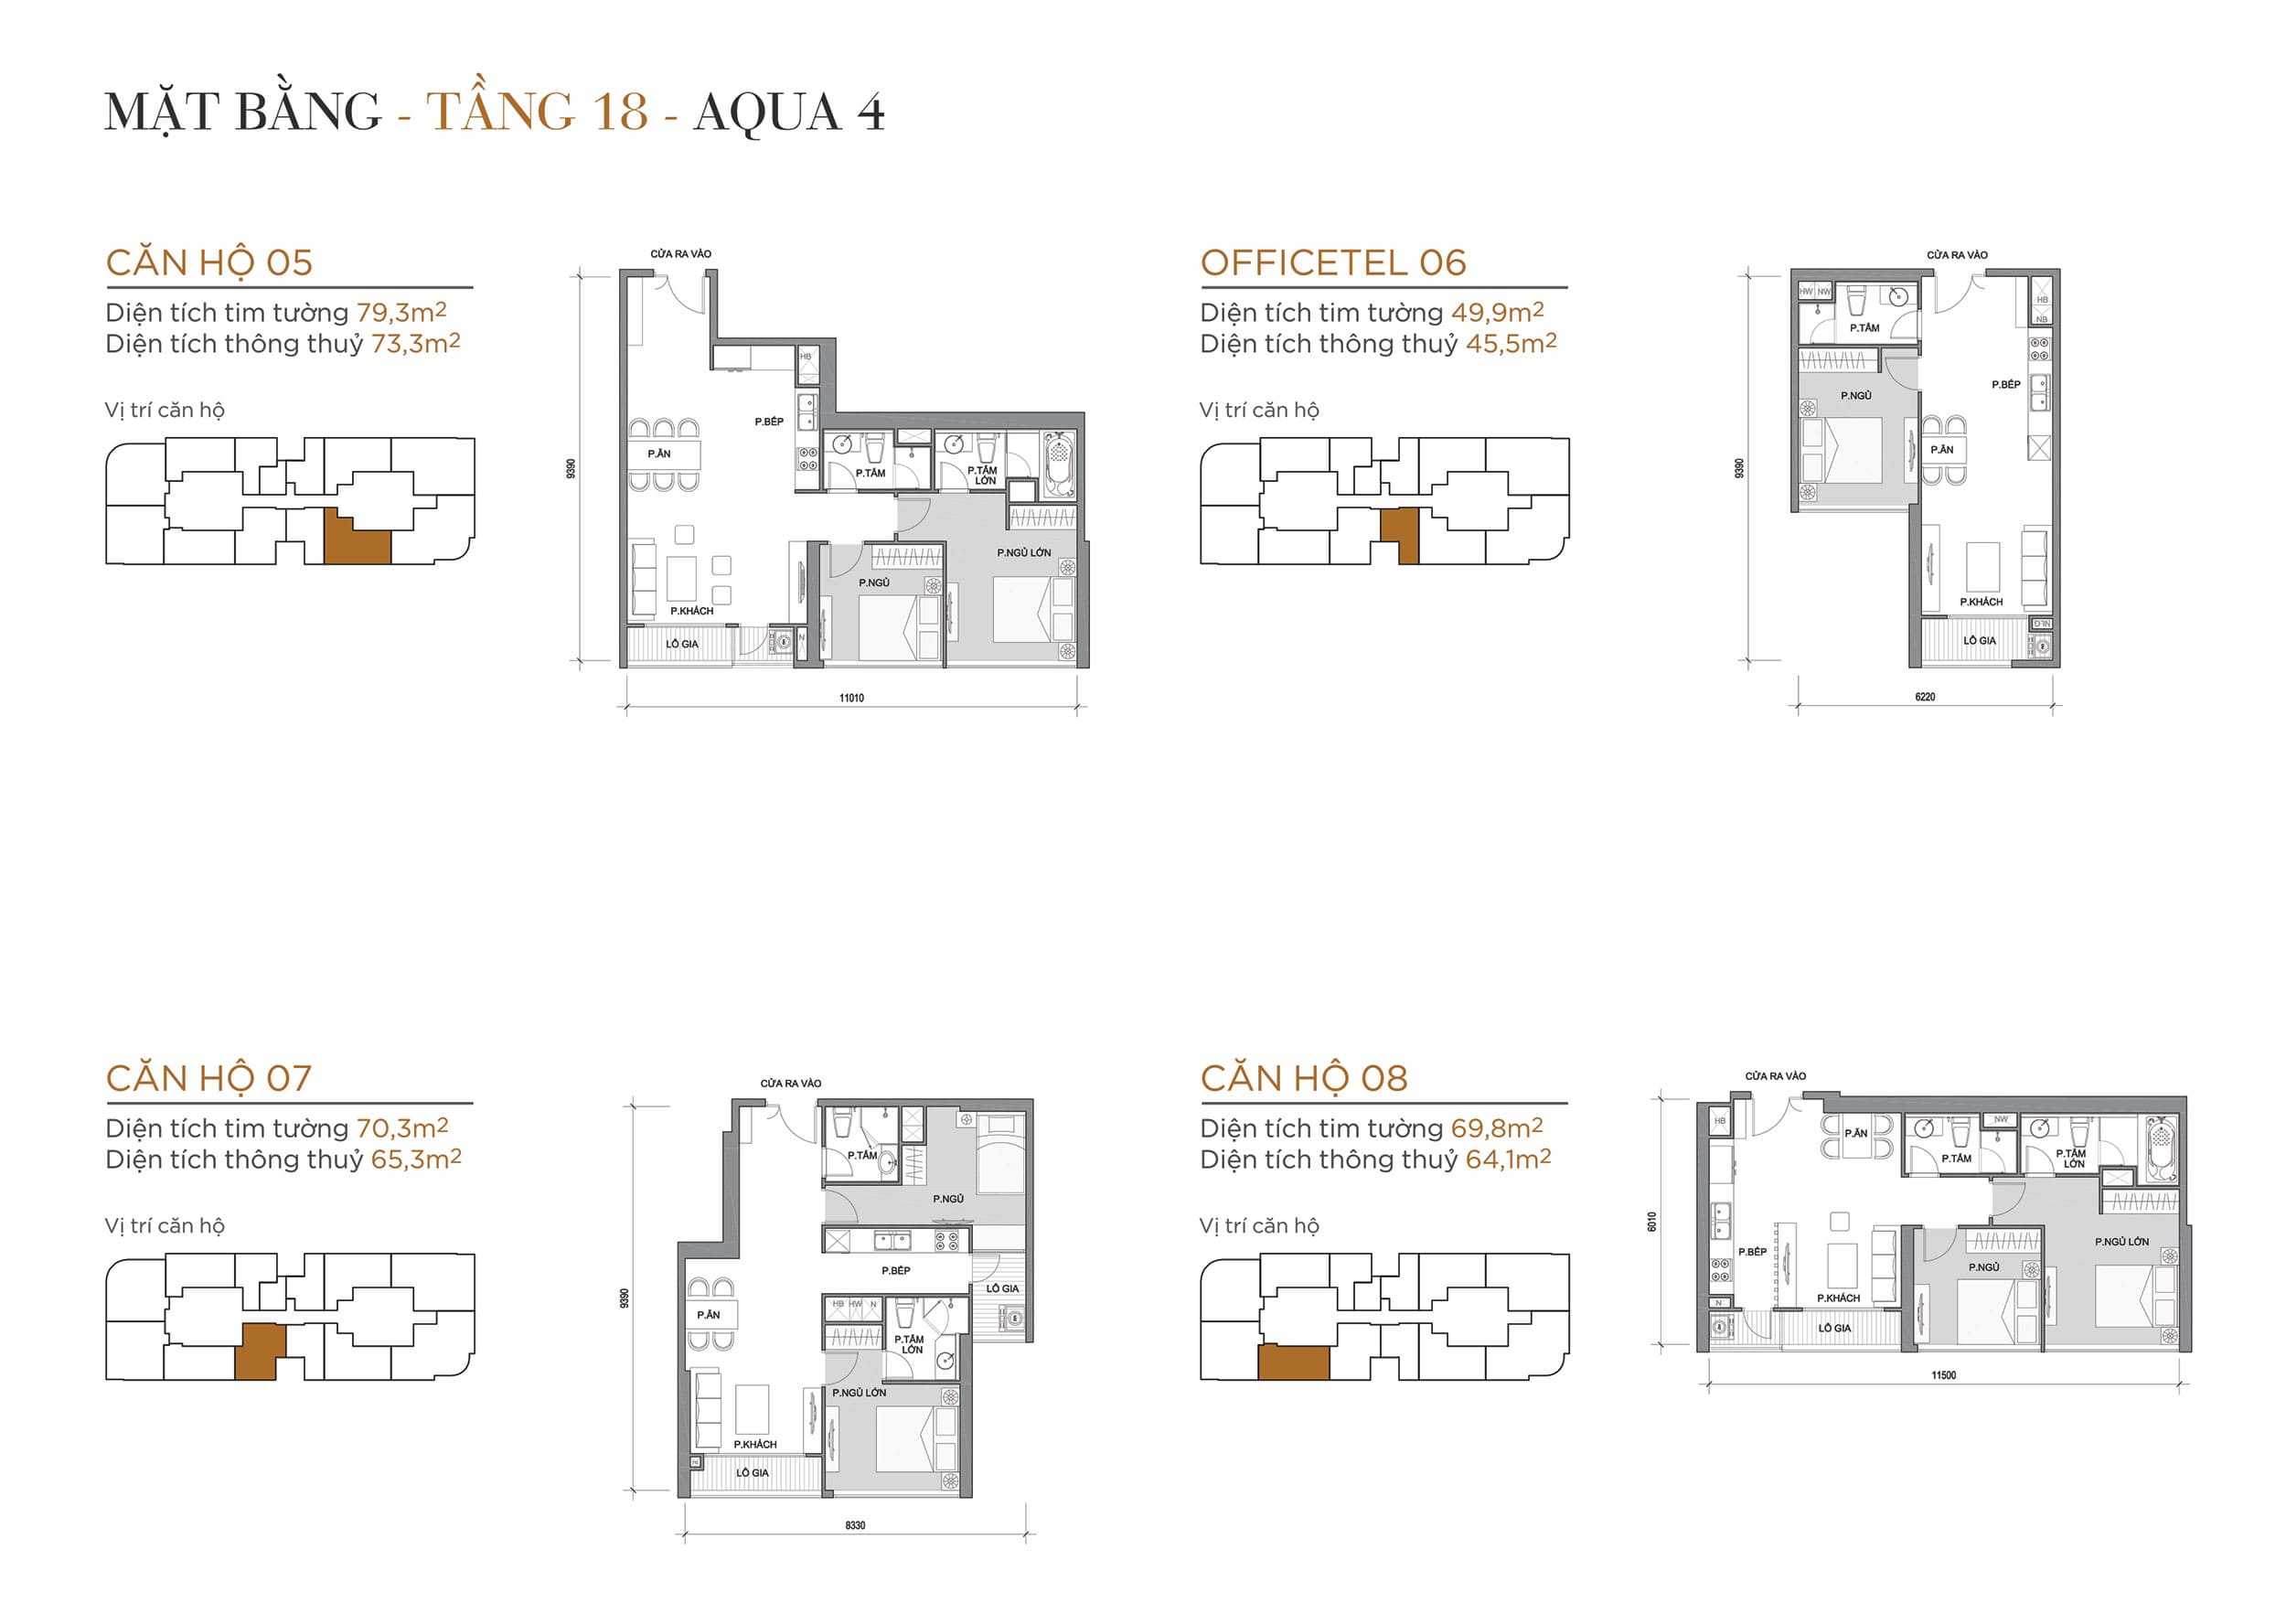 Layout thiết kế điển hình Tầng 18 Tòa Aqua 4 loại Căn hộ 05, Officetel 06, Căn hộ 07, Căn hộ 08.